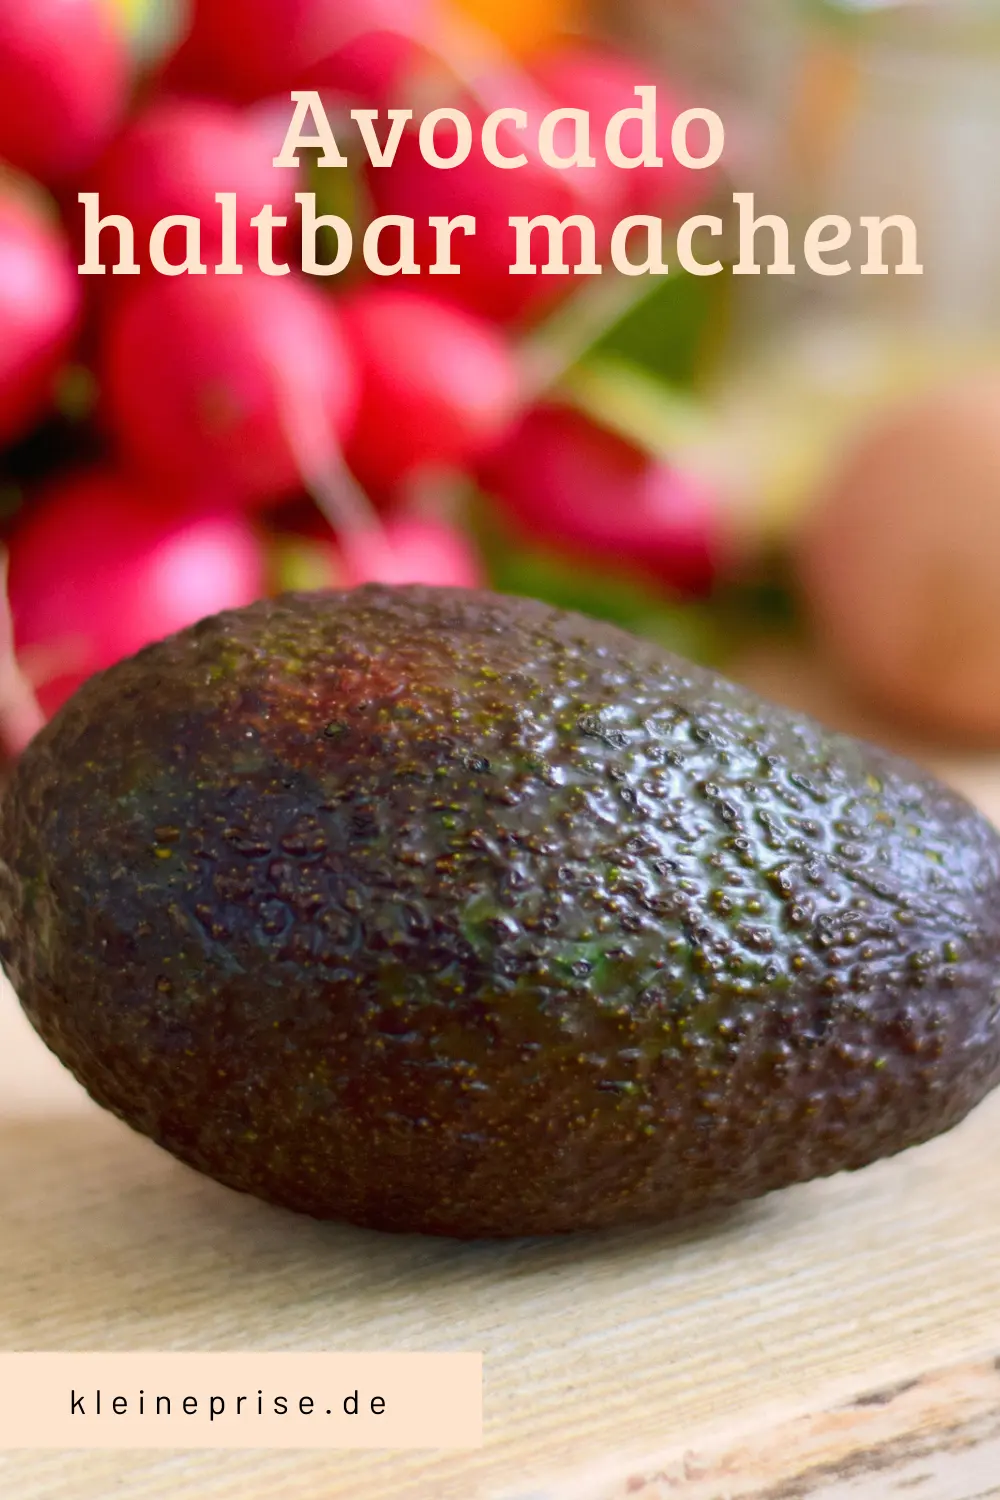 Pin es bei Pinterest: Avocado haltbar machen